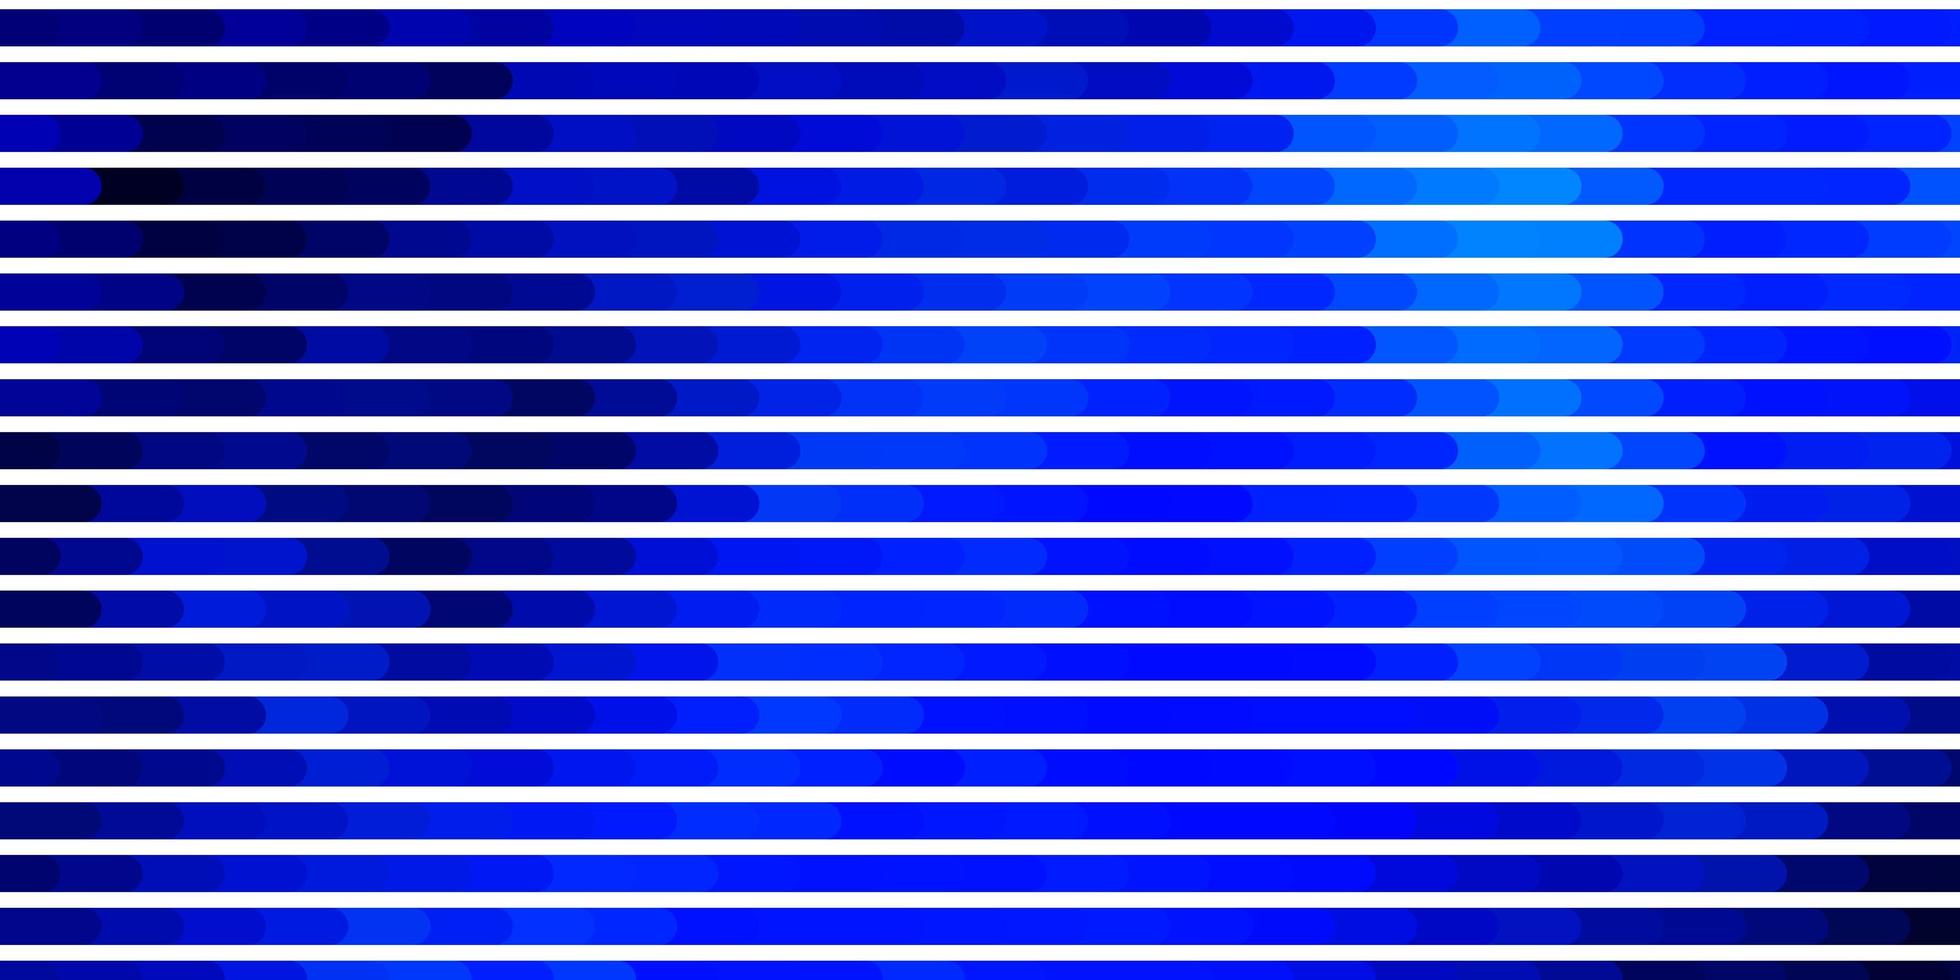 fond de vecteur bleu clair avec des lignes.